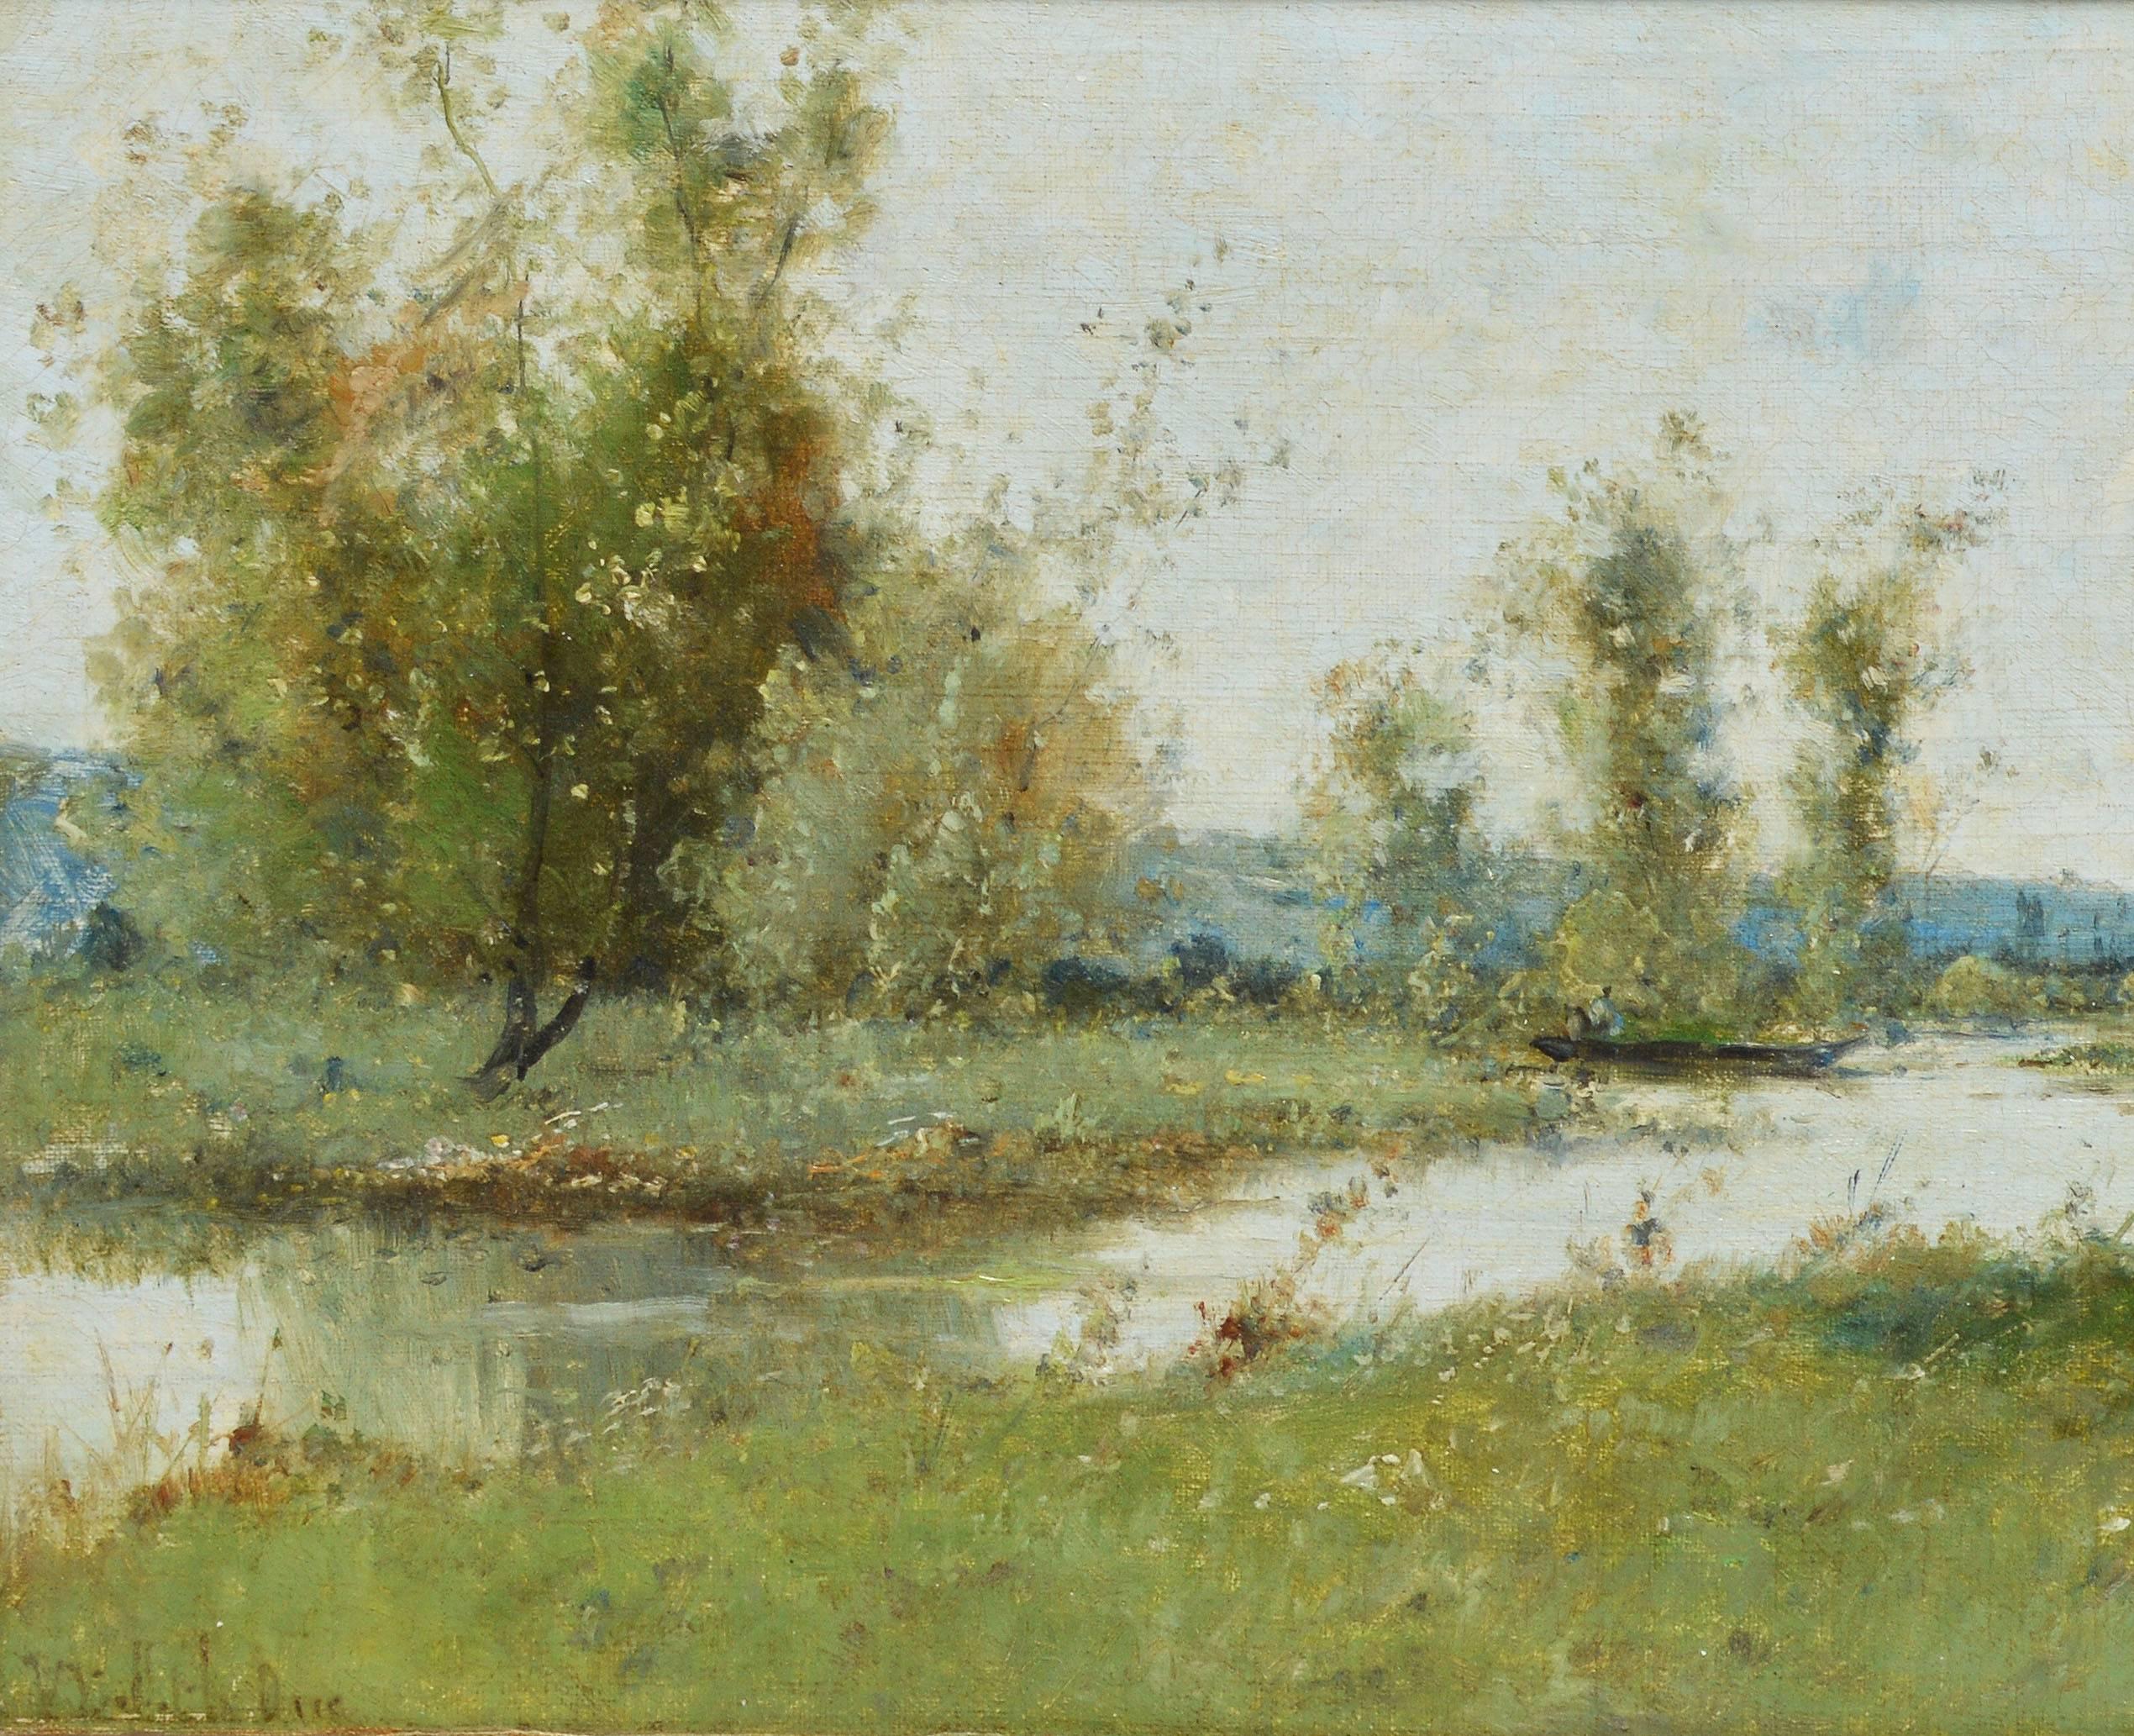 Barbizon River Landscape with a Boat by Victor Viollet-le-Duc  1